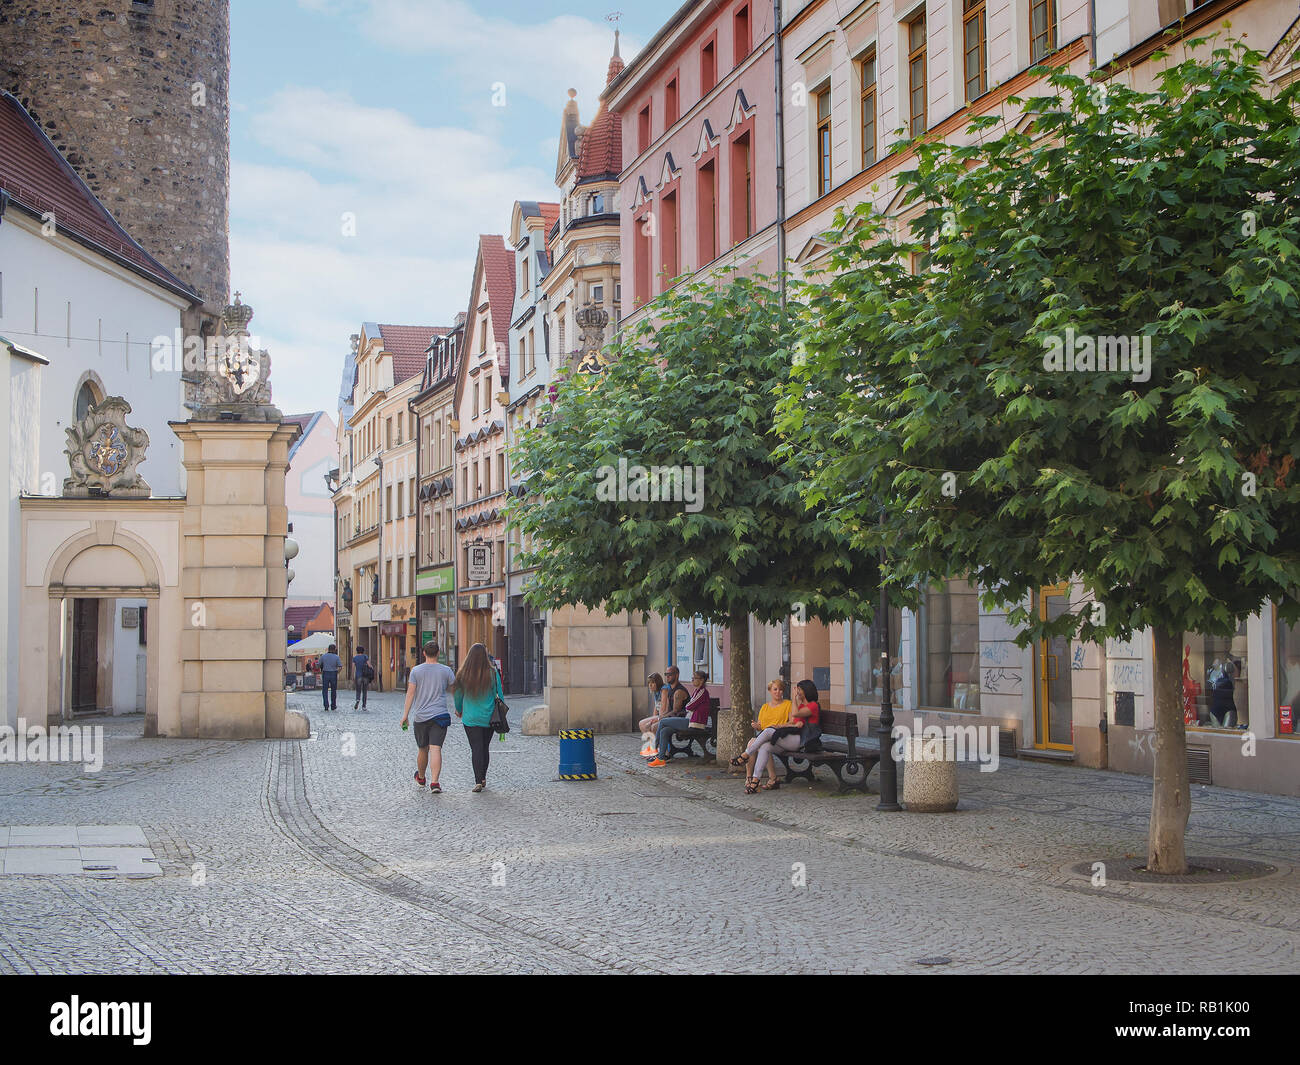 JELENIA GORA, POLAND - AUGUST 19, 2016: Tourists At The Historic City Gate in Downtown in Jelenia Gora, Poland Stock Photo